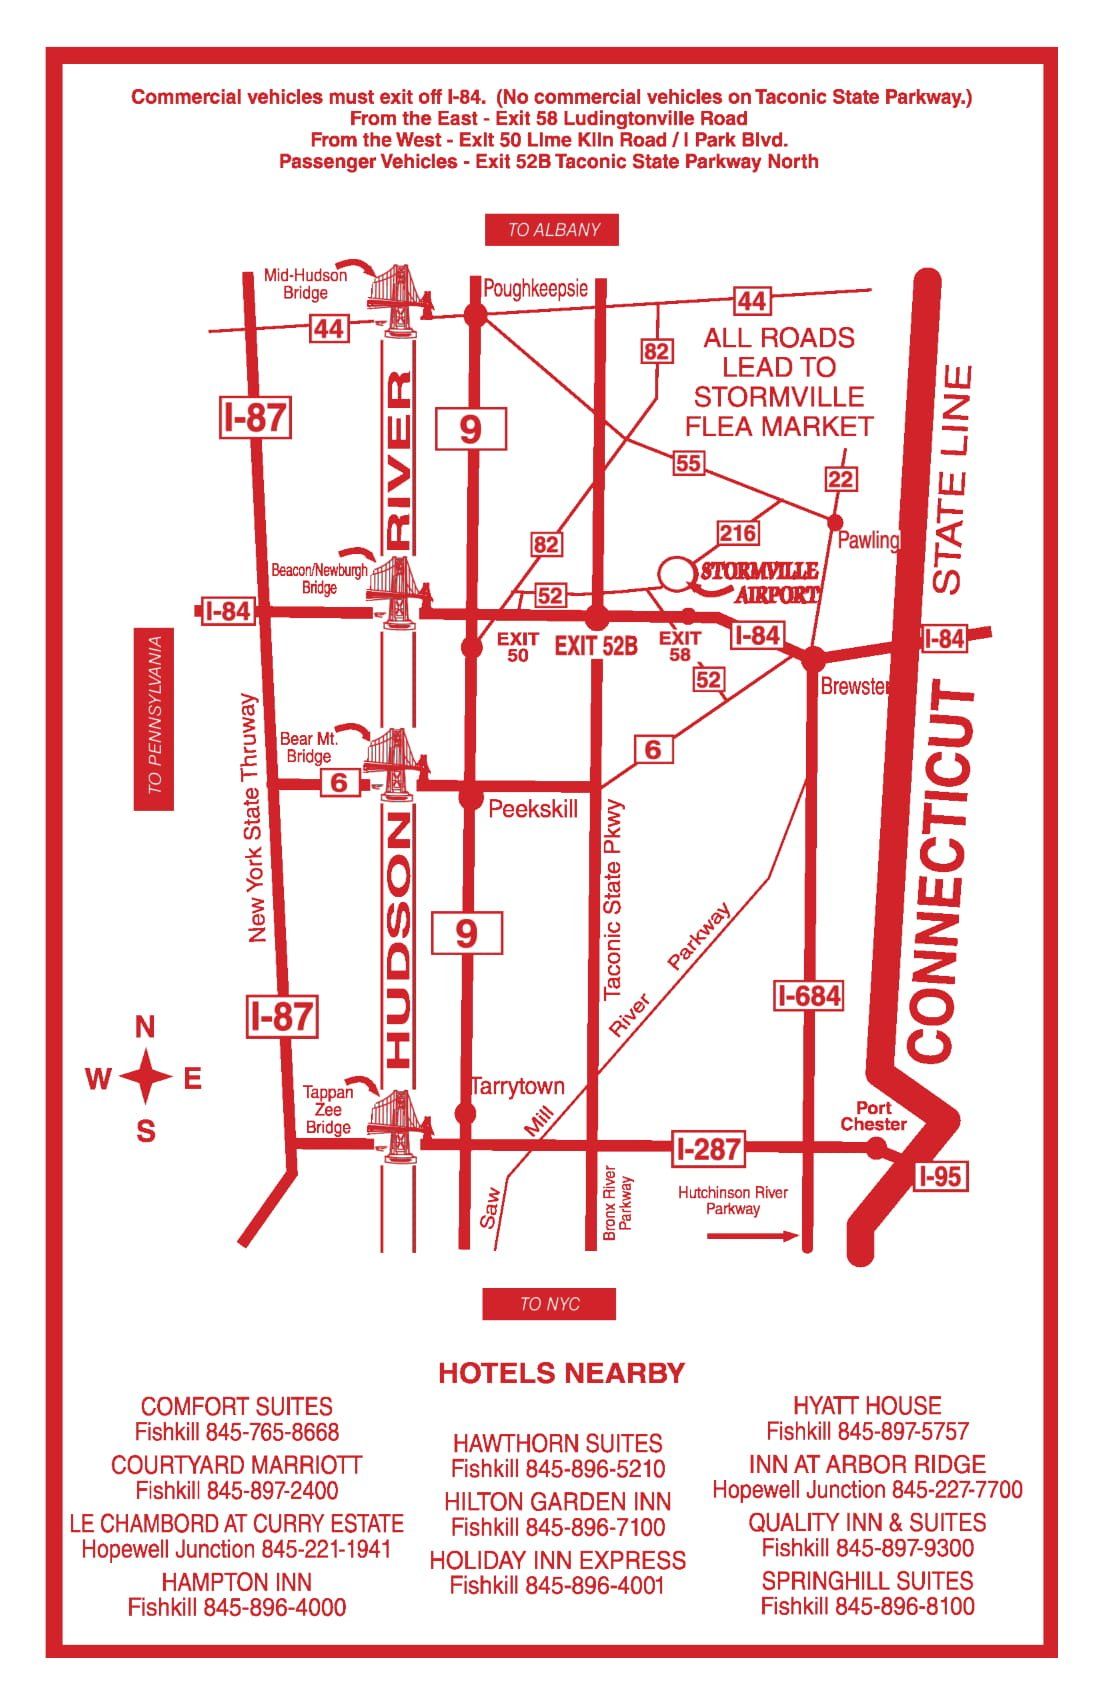 Yard Sale Location — Flea Market Map in Stormville, NY